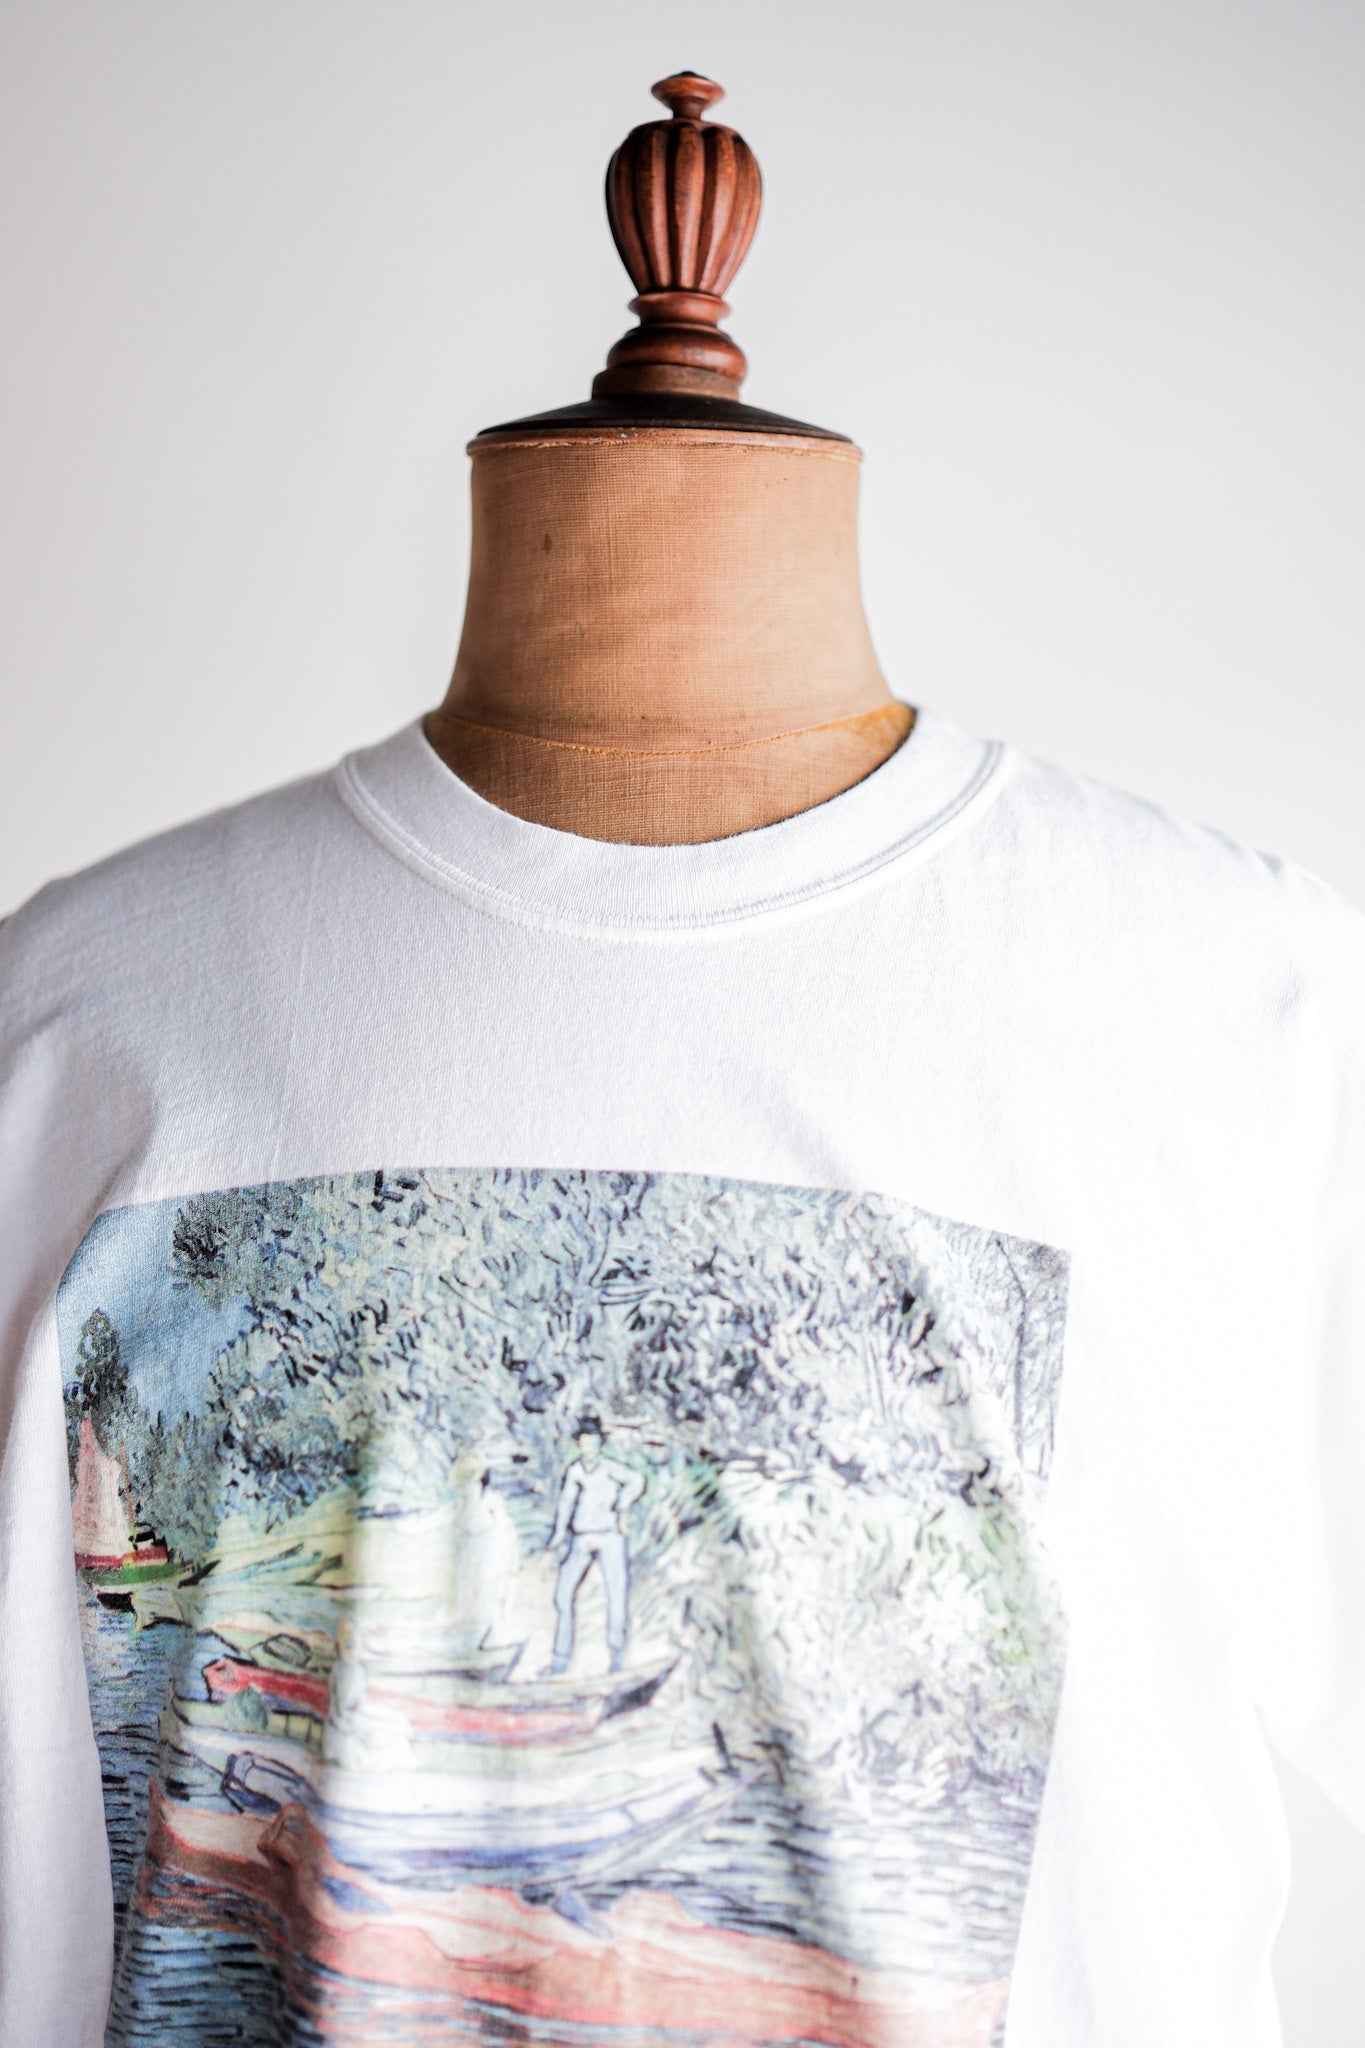 【~00's】Vintage Art Print T-shirt Size.L "Vincent Van Gogh's" "Bank of the Oise at Auvers"